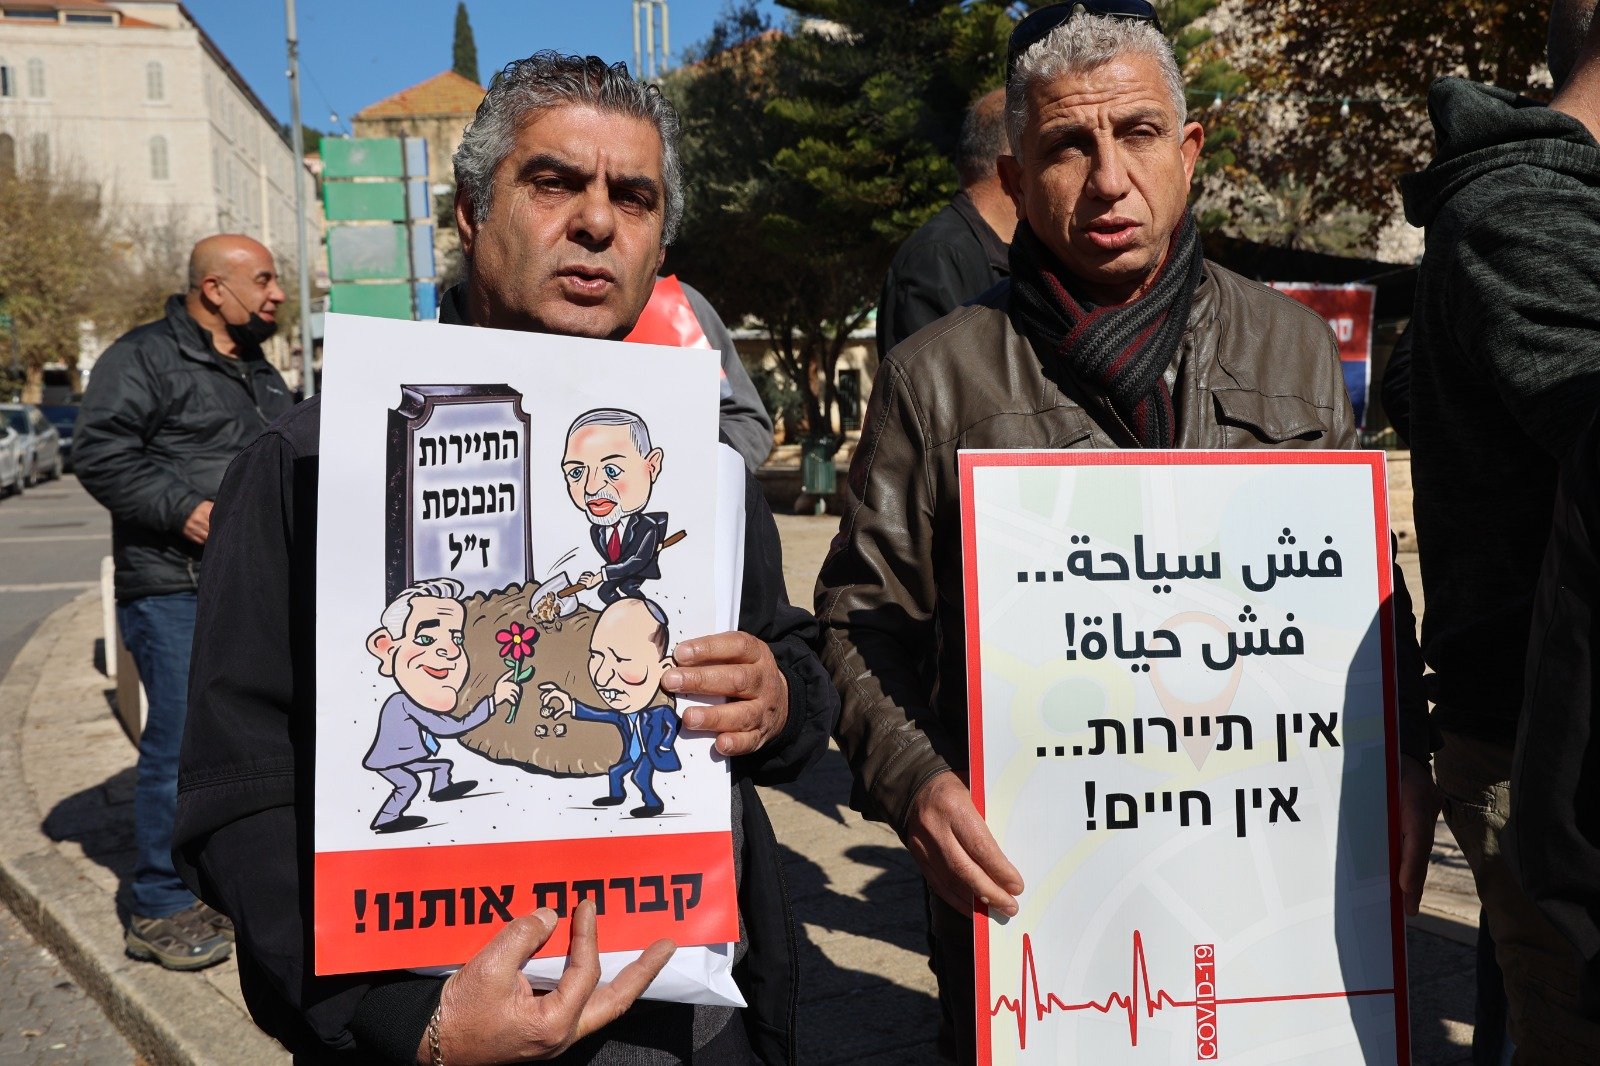 أزمة السياحة بسبب تقييدات الكورونا  - تظاهرة غاضبة في الناصرة-16